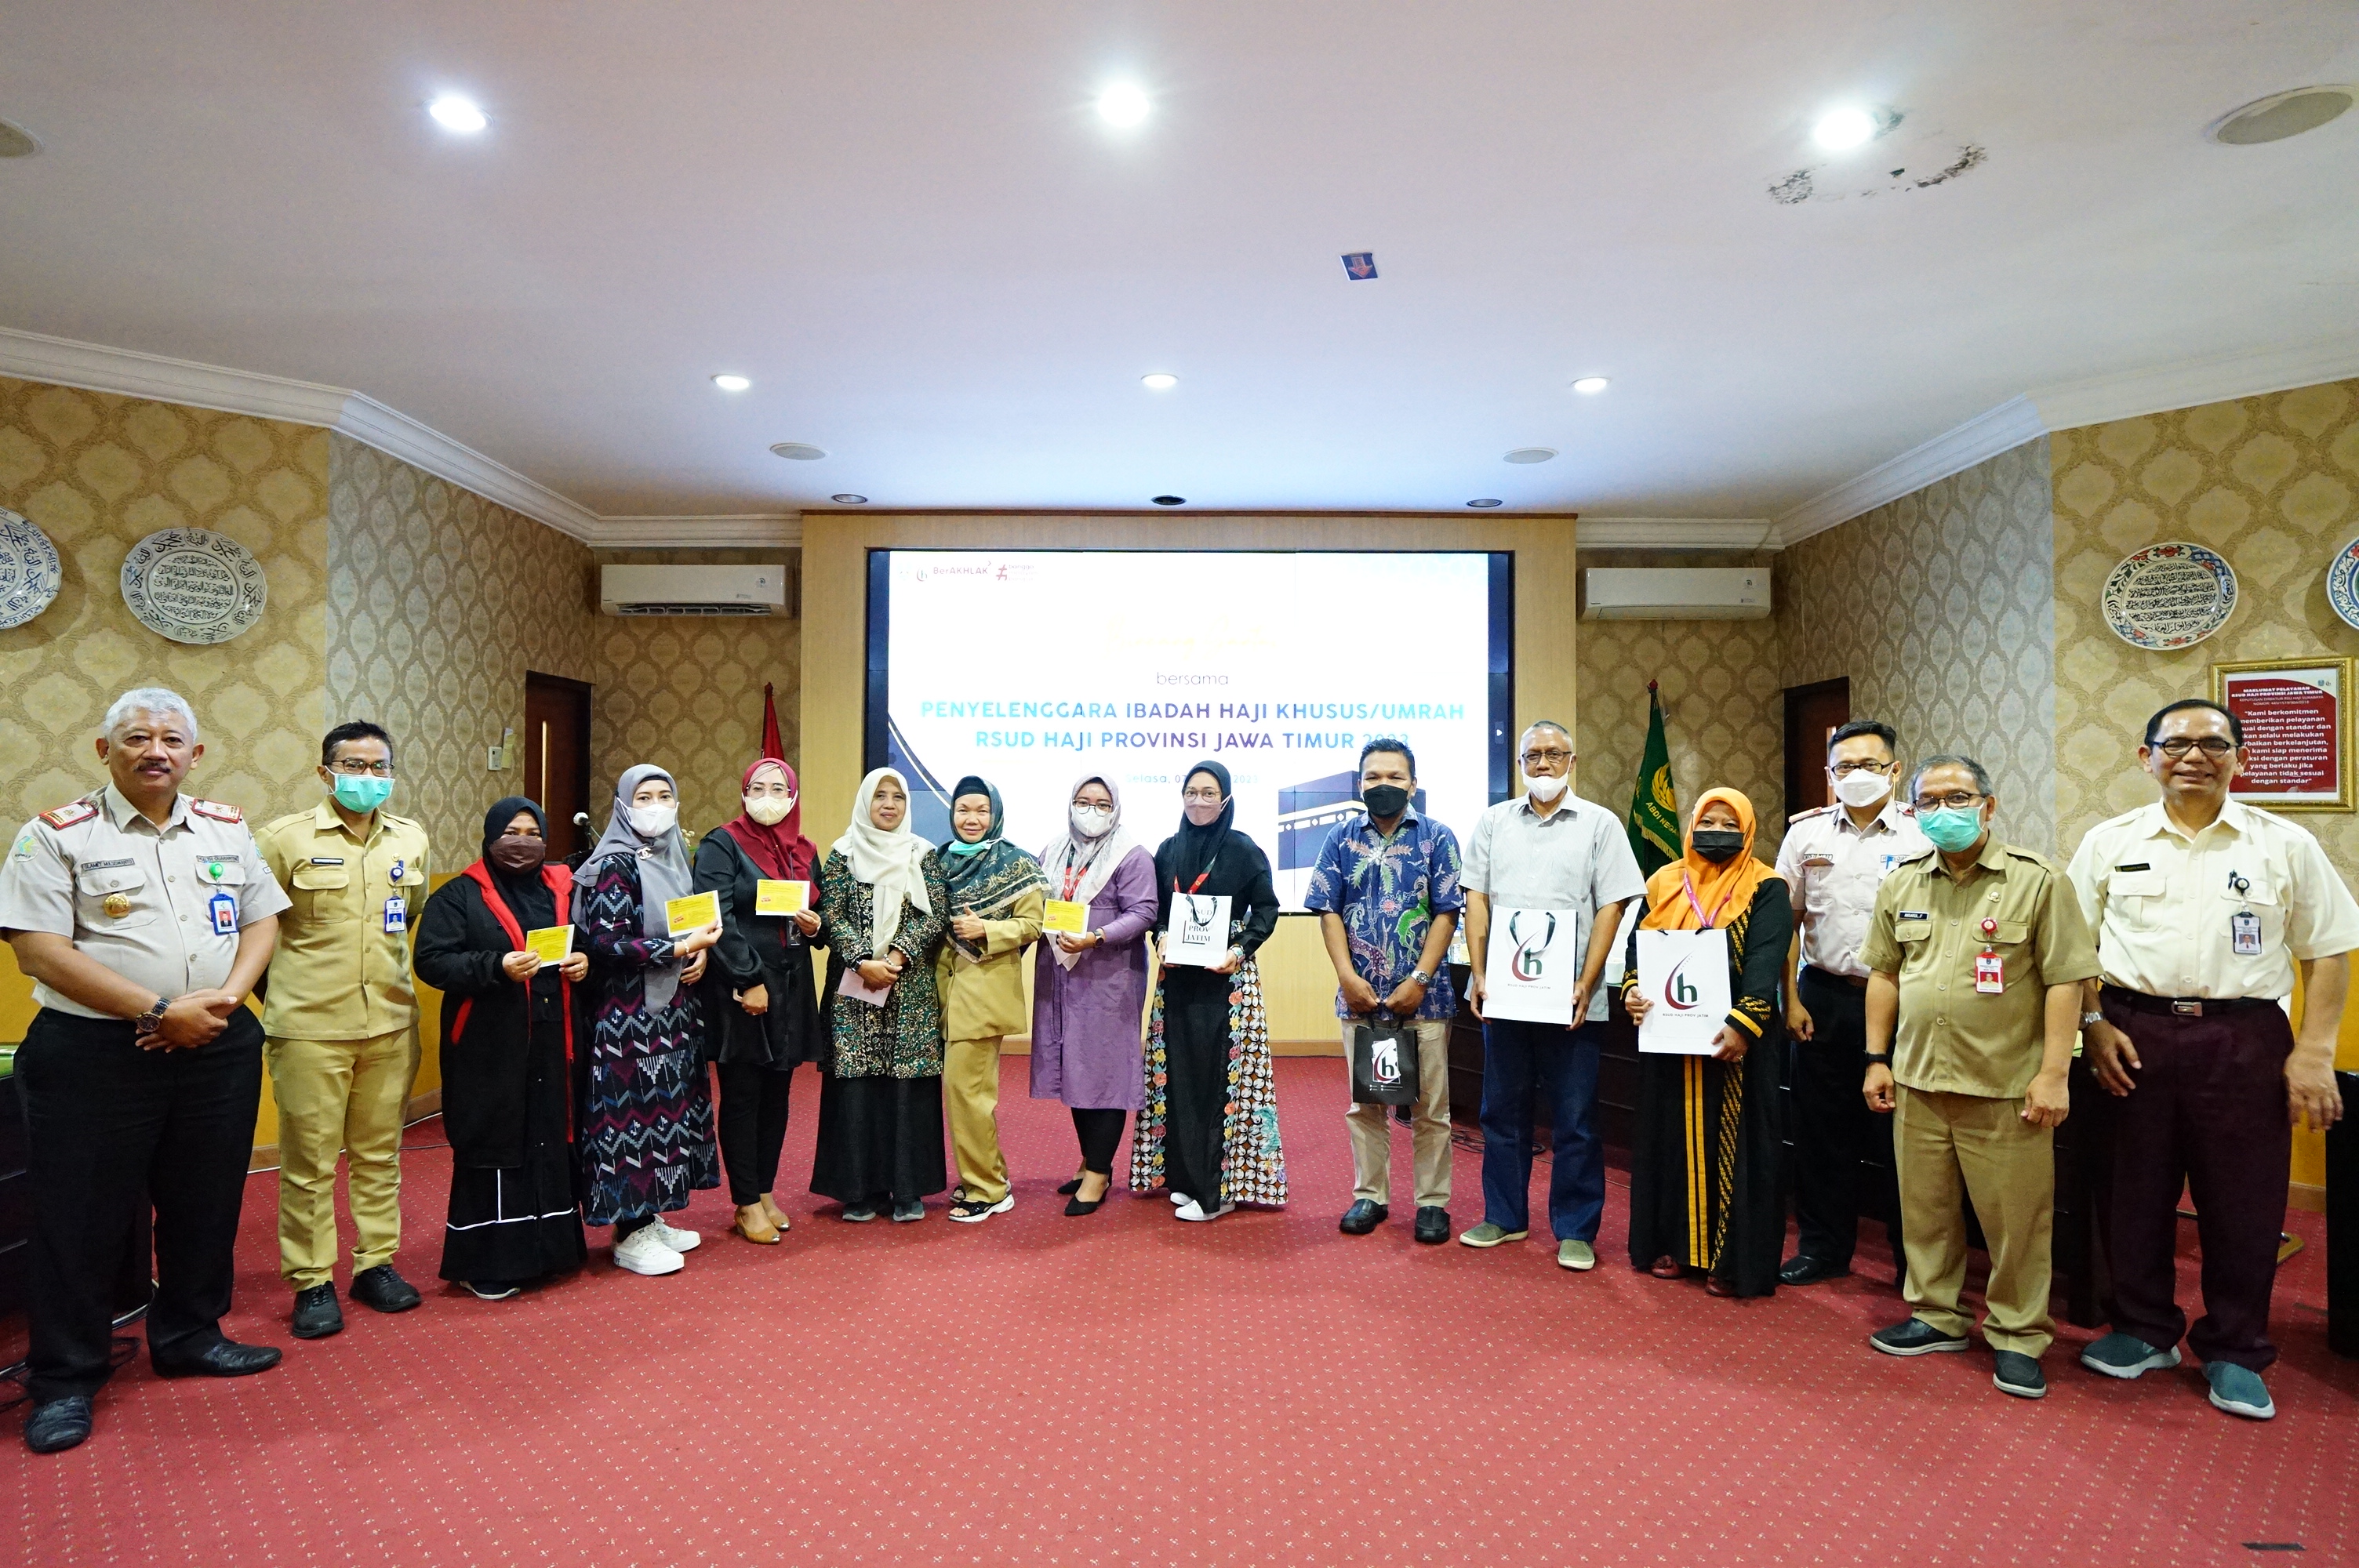 Persiapkan Keberangkatan Calon Jamaah Haji Khusus, RSUD Haji Provinsi Jatim Gelar Bincang Santai- Dinas Komunikasi dan Informatika Provinsi Jawa Timur